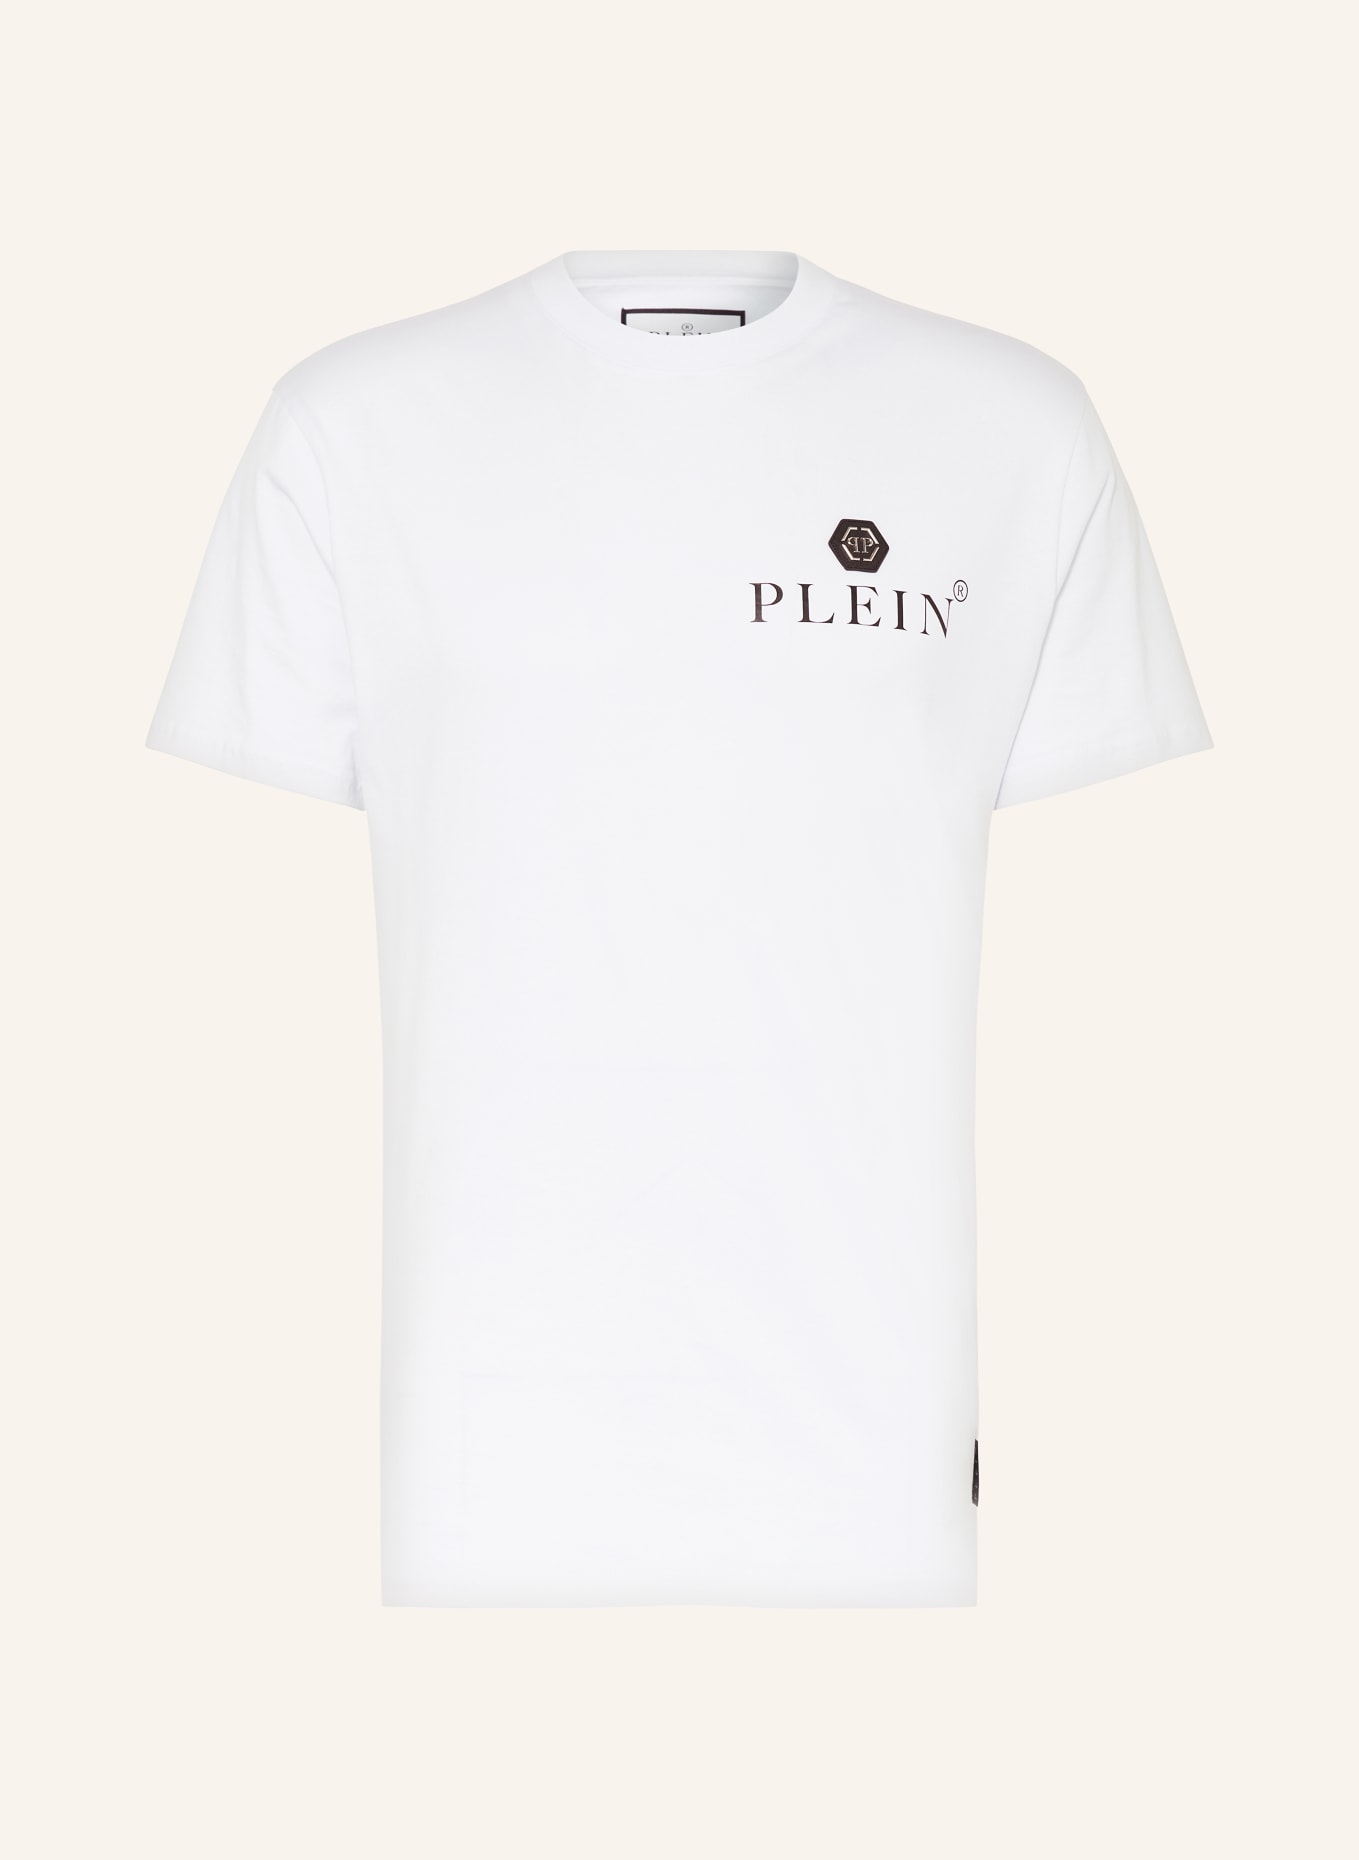 PHILIPP PLEIN T-Shirt, Farbe: WEISS (Bild 1)